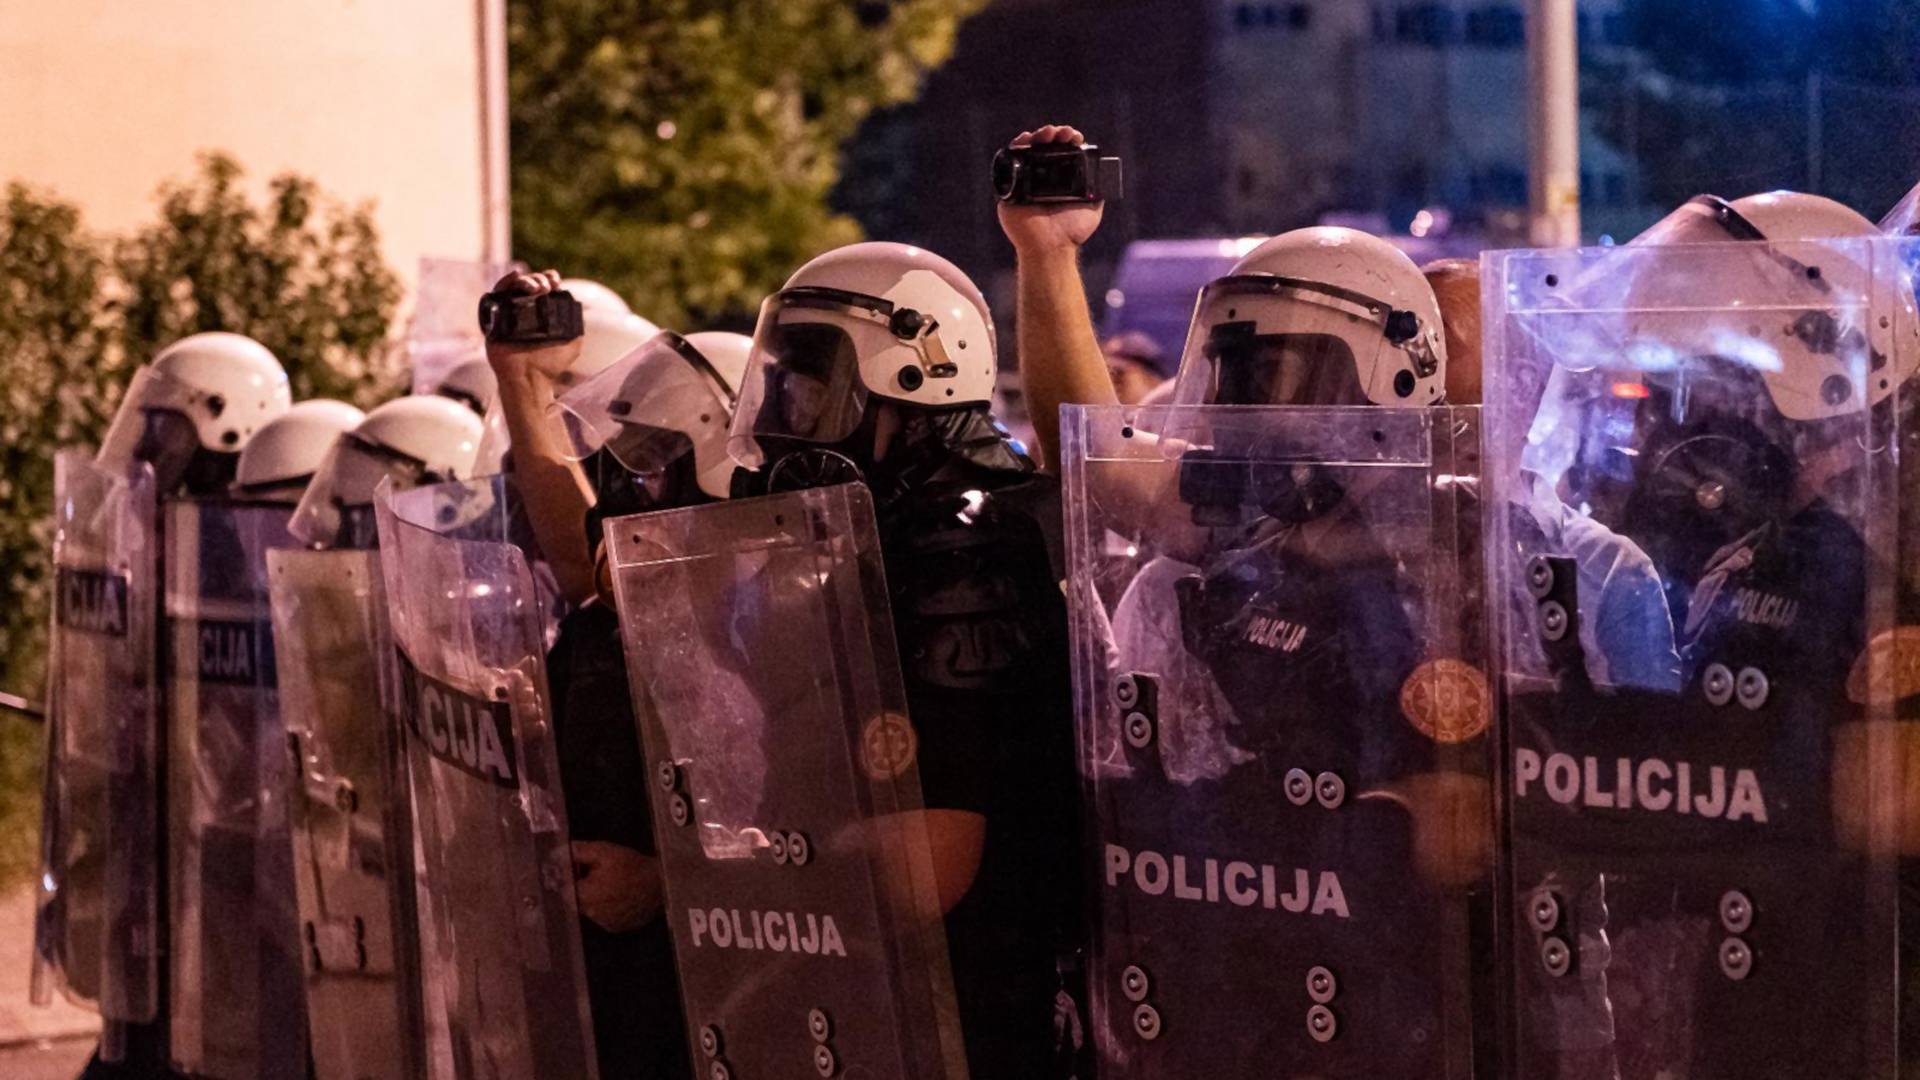 Crna Gora je žarište nereda i nasilja, a ove jezive prizore više ne želimo da gledamo